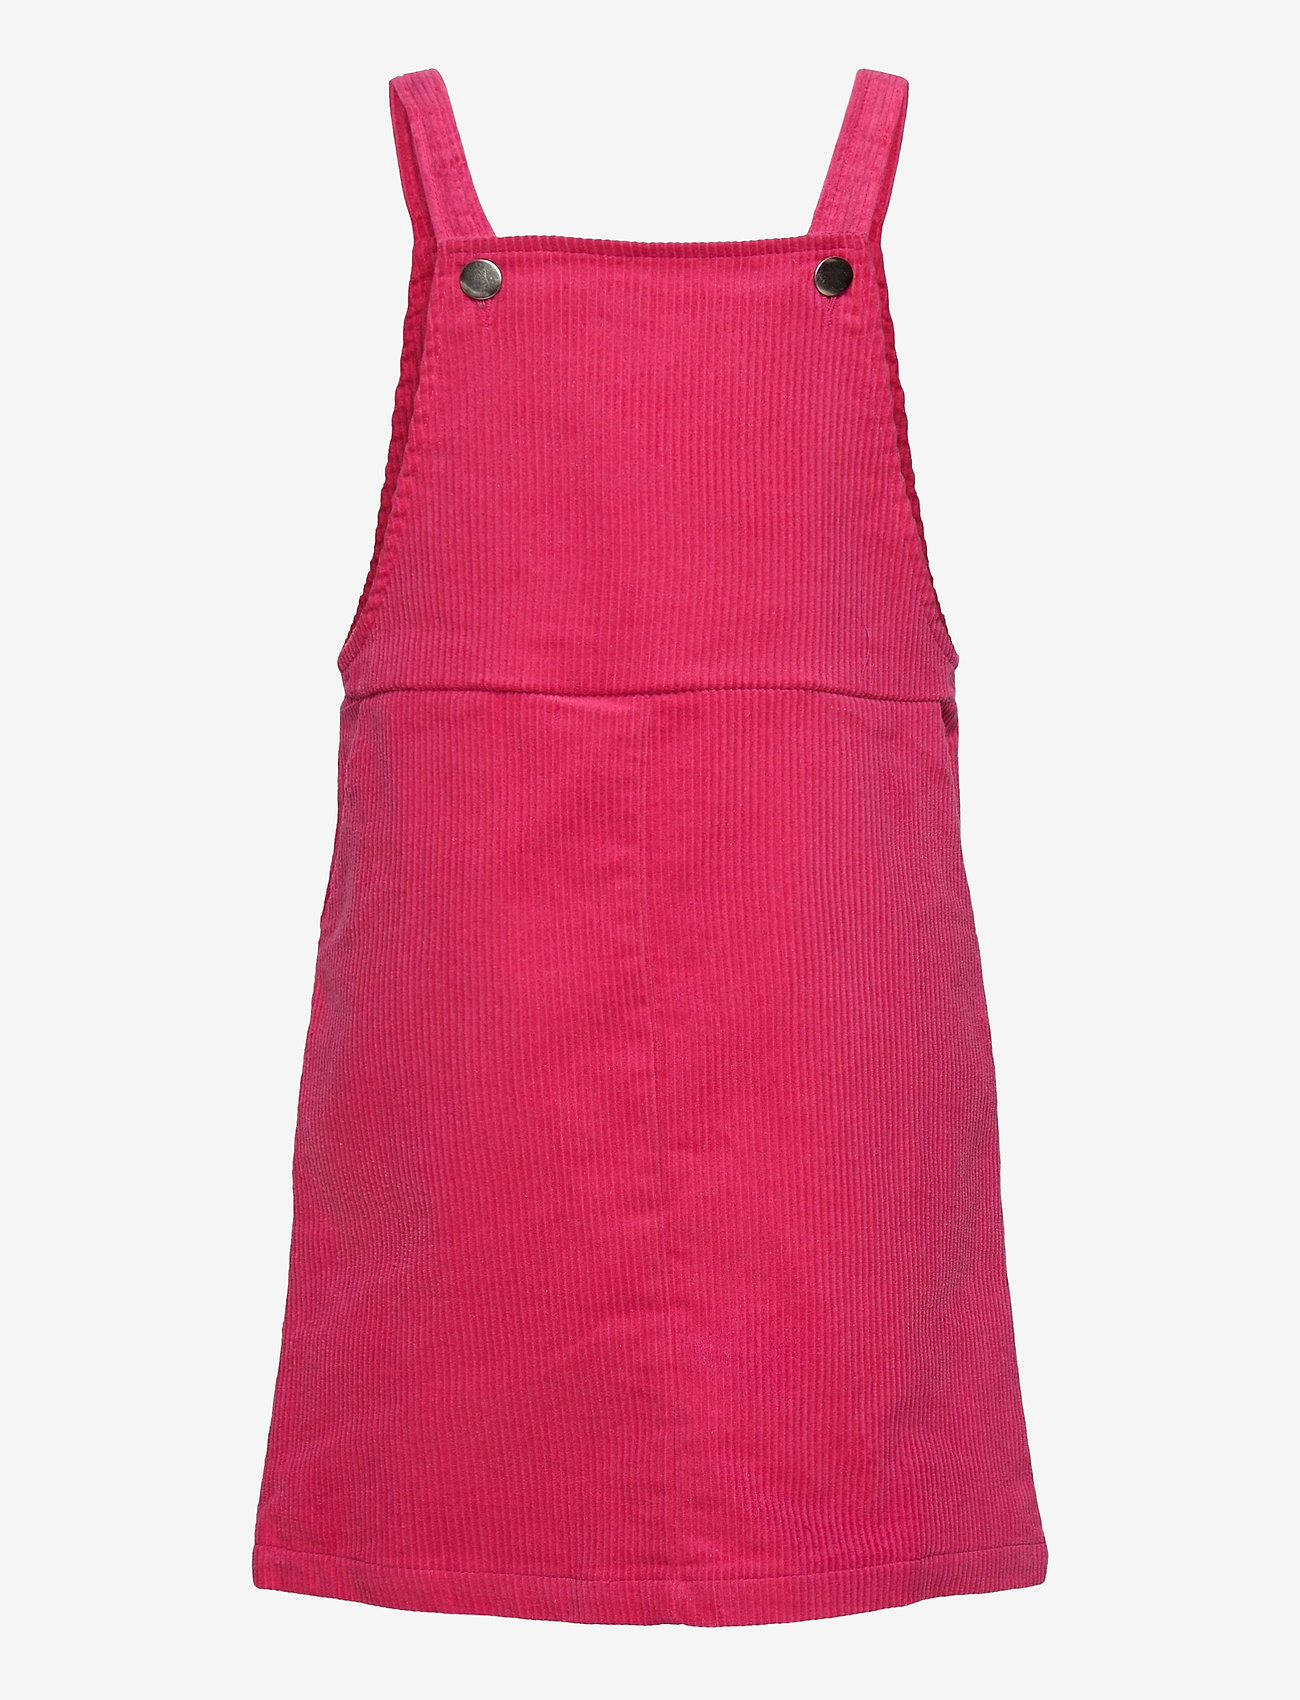 Grunt - Hira Cord. Dress - latzkleid - neon pink - 0